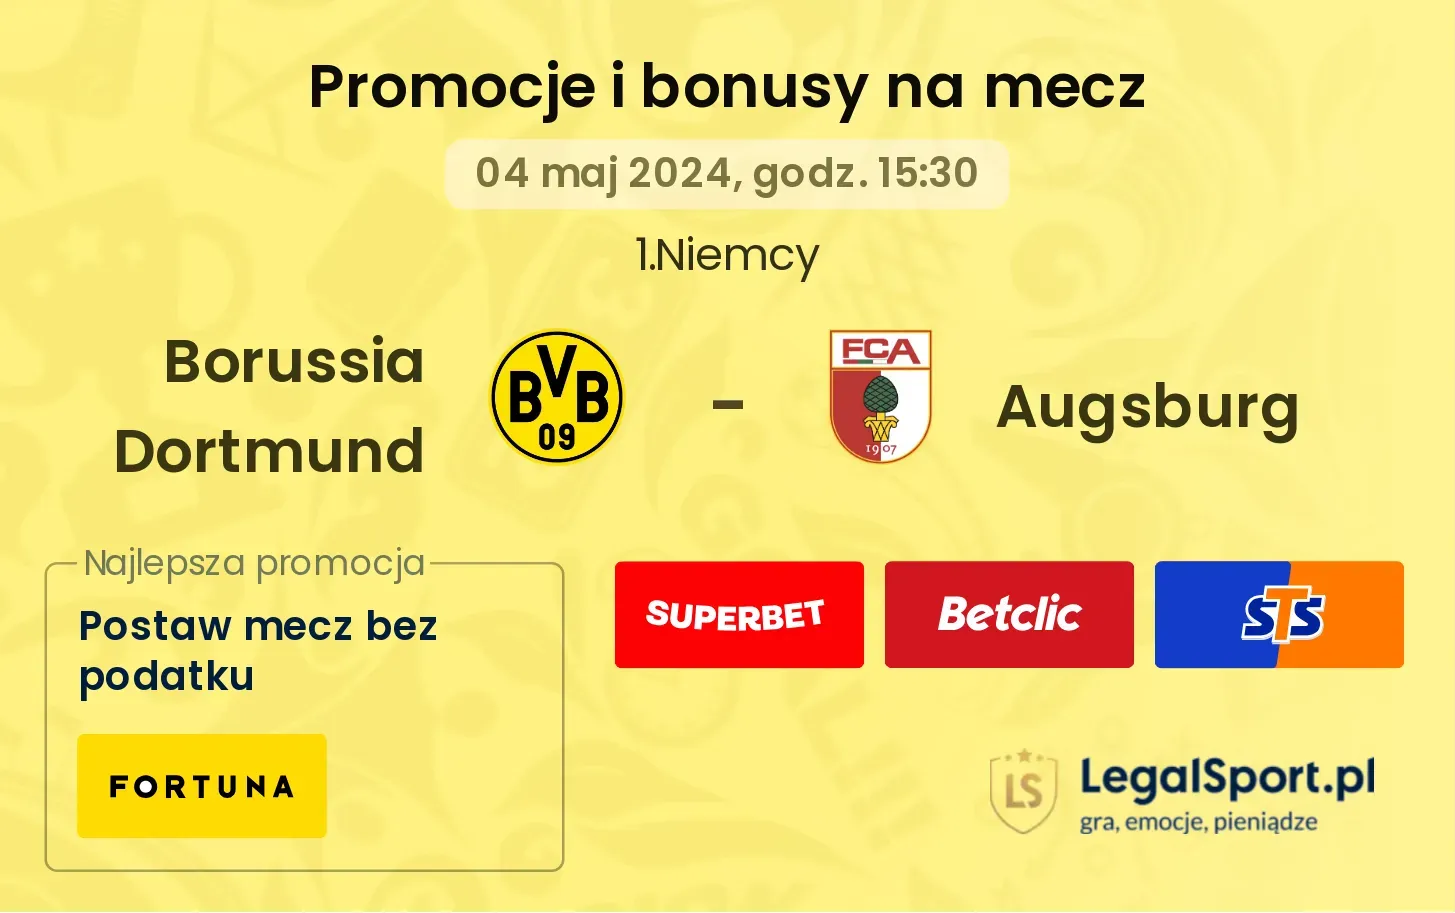 Borussia Dortmund - Augsburg bonusy i promocje (04.05, 15:30)